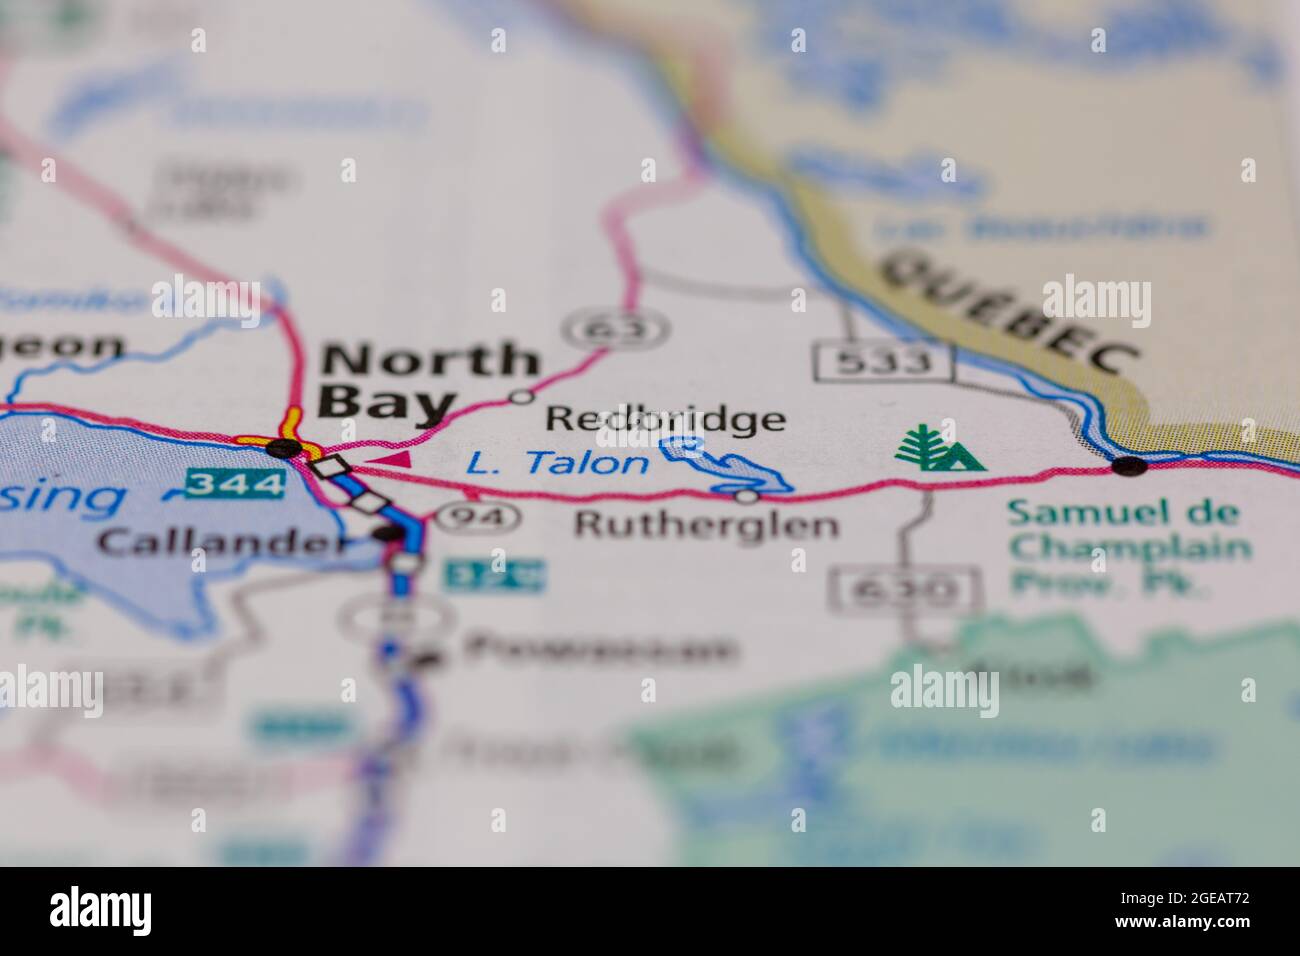 Redbridge Ontario Canada wird auf einer Straßenkarte oder Geografie-Karte angezeigt Stockfoto